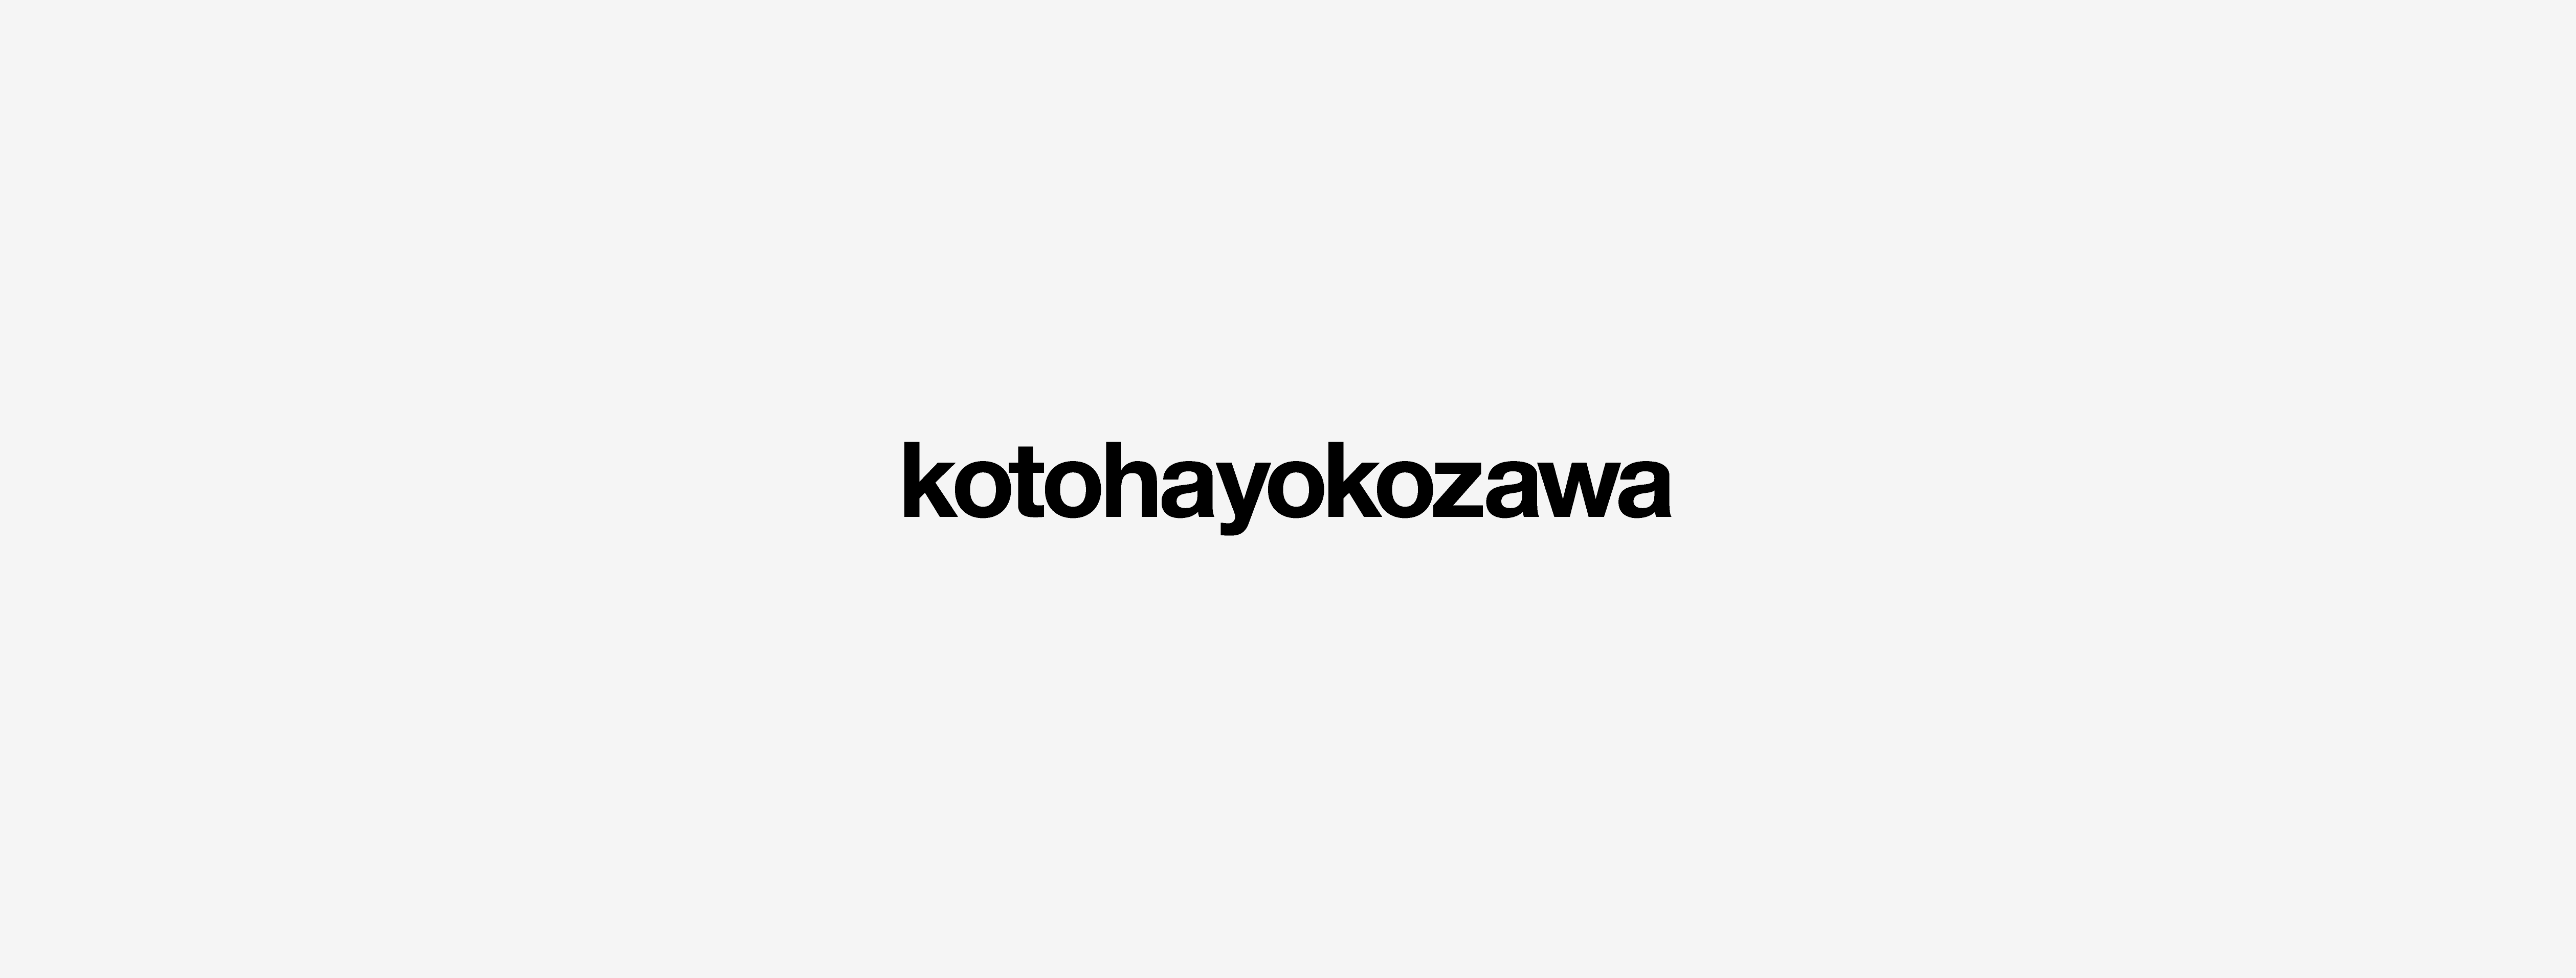 kotohayokozawa コトハヨコザワ